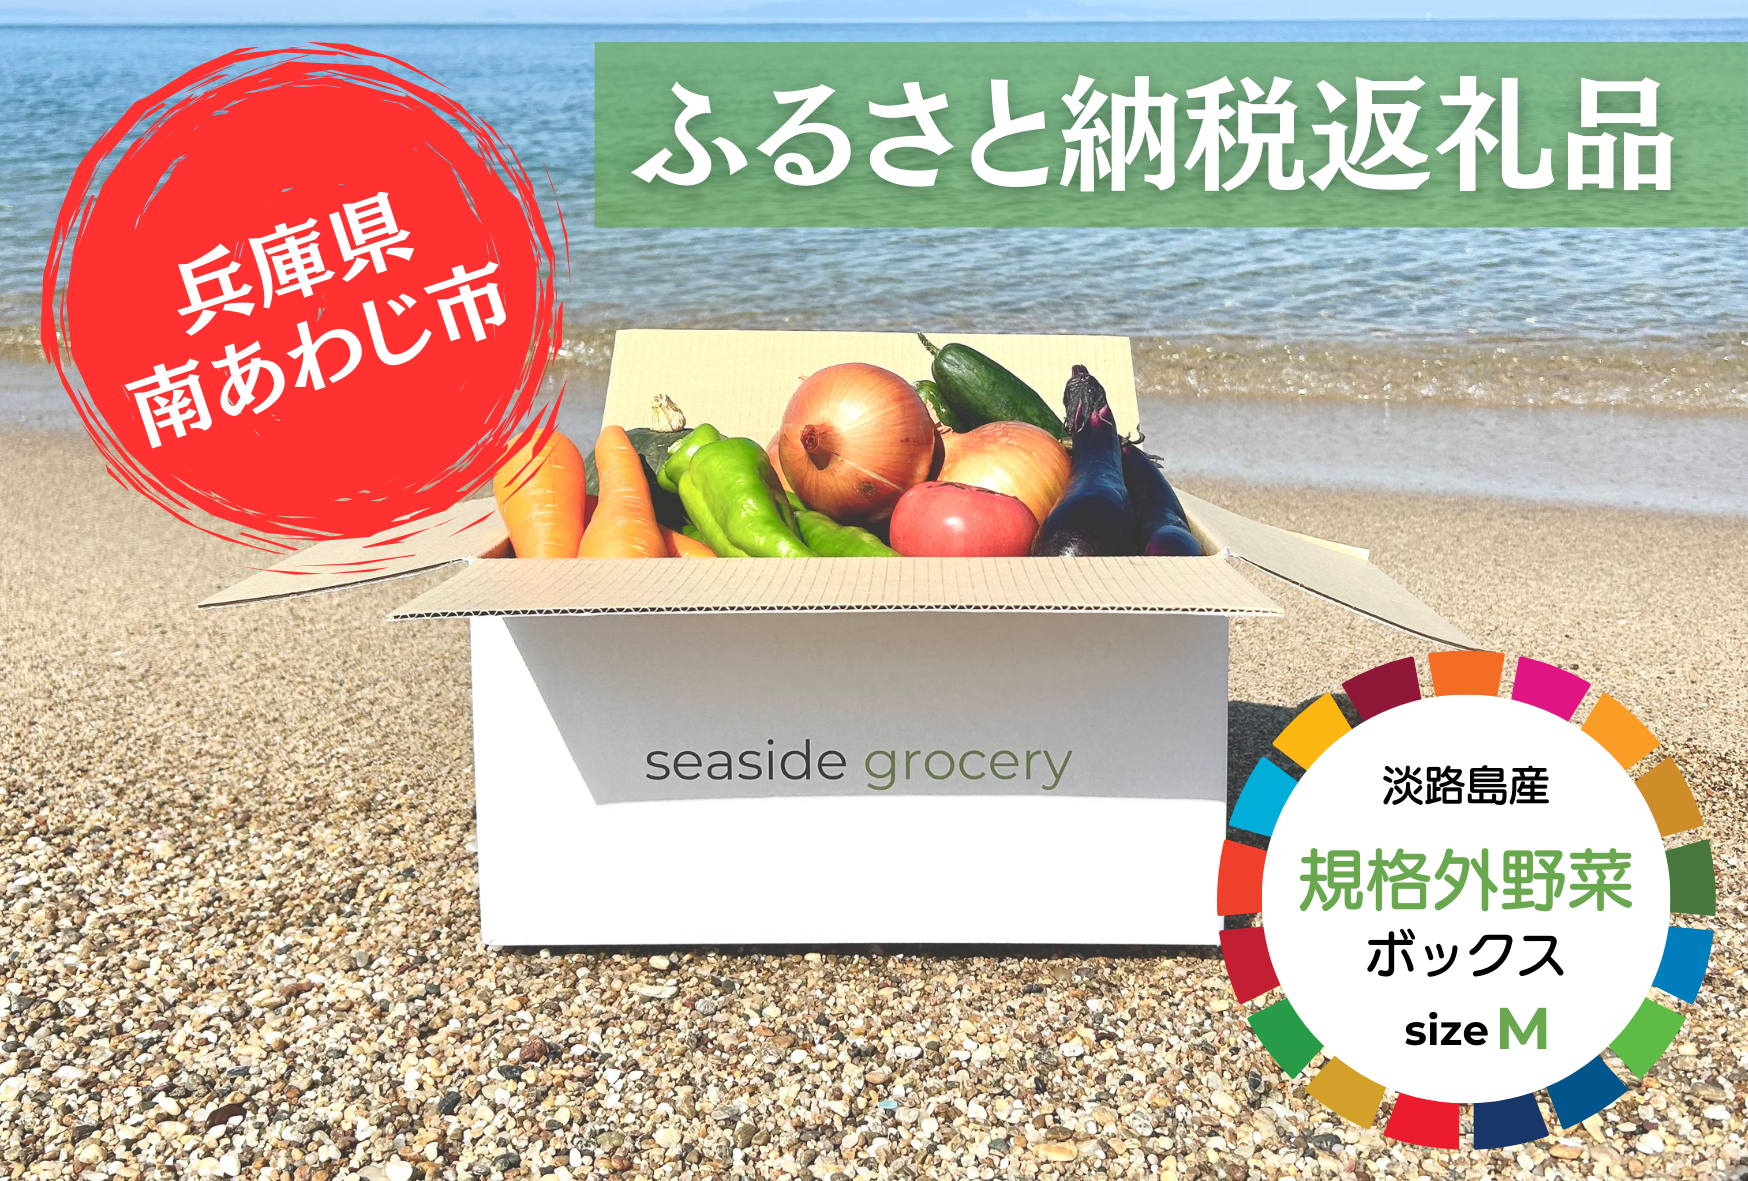 ふるさと納税 規格外野菜ボックスMサイズ - seaside grocery（シーサイドグロサリー）